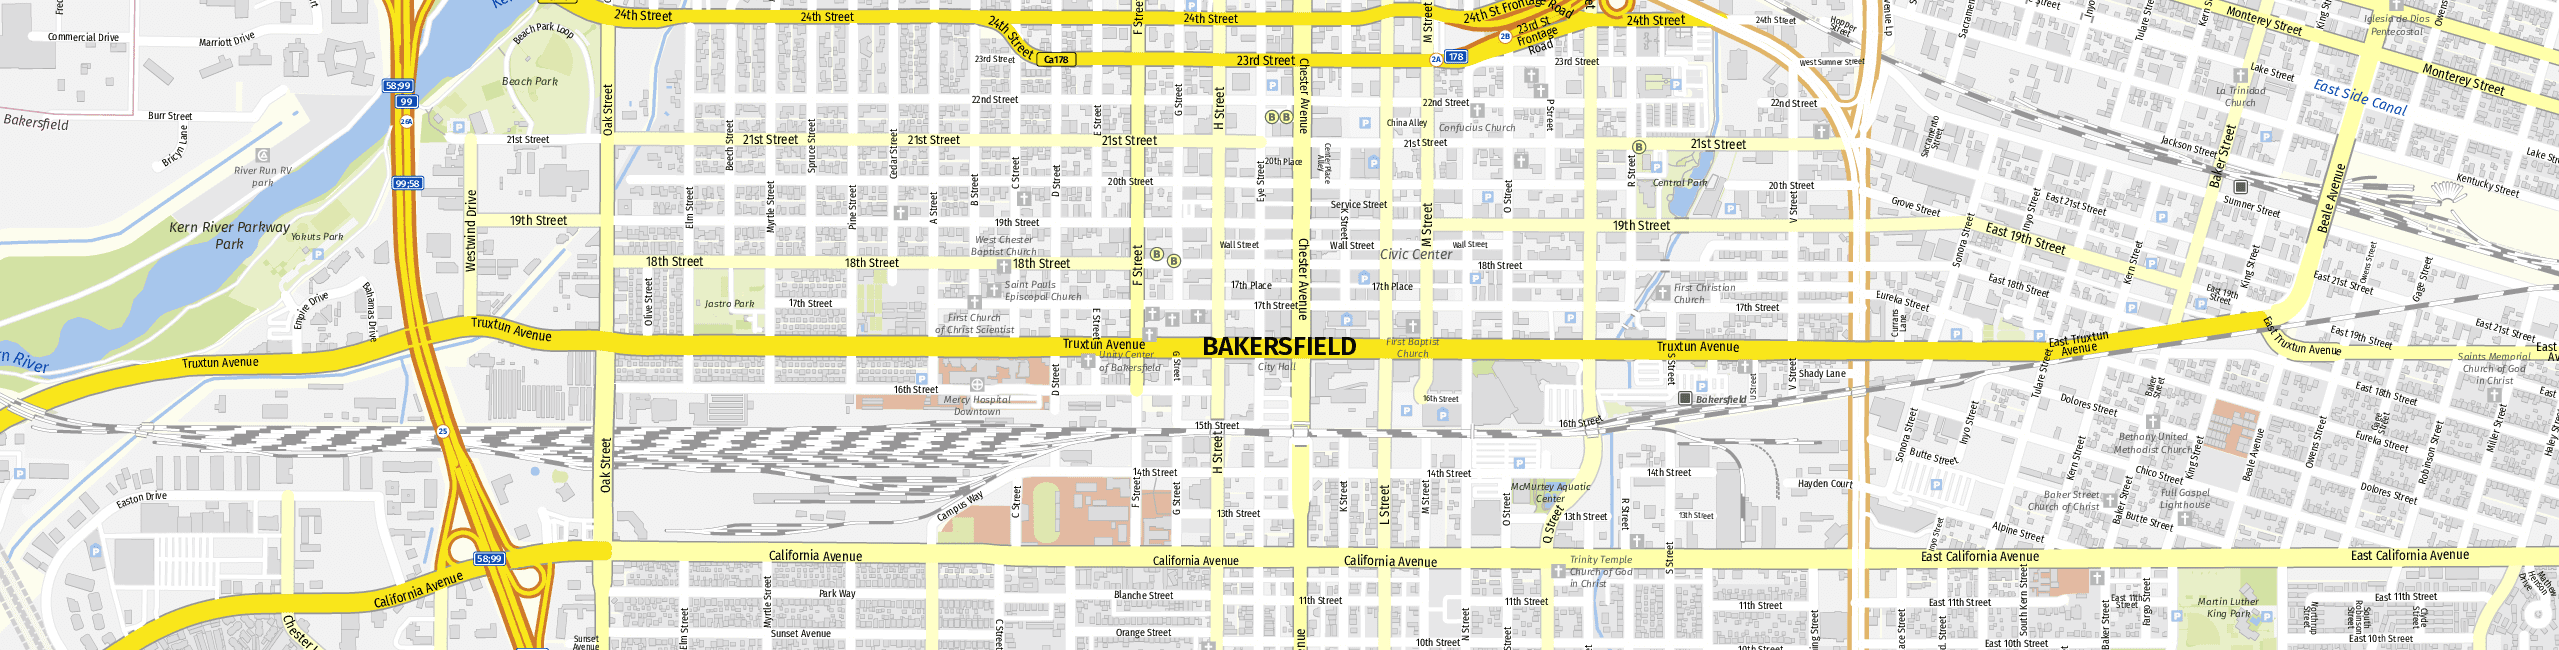 Stadtplan Bakersfield zum Downloaden.